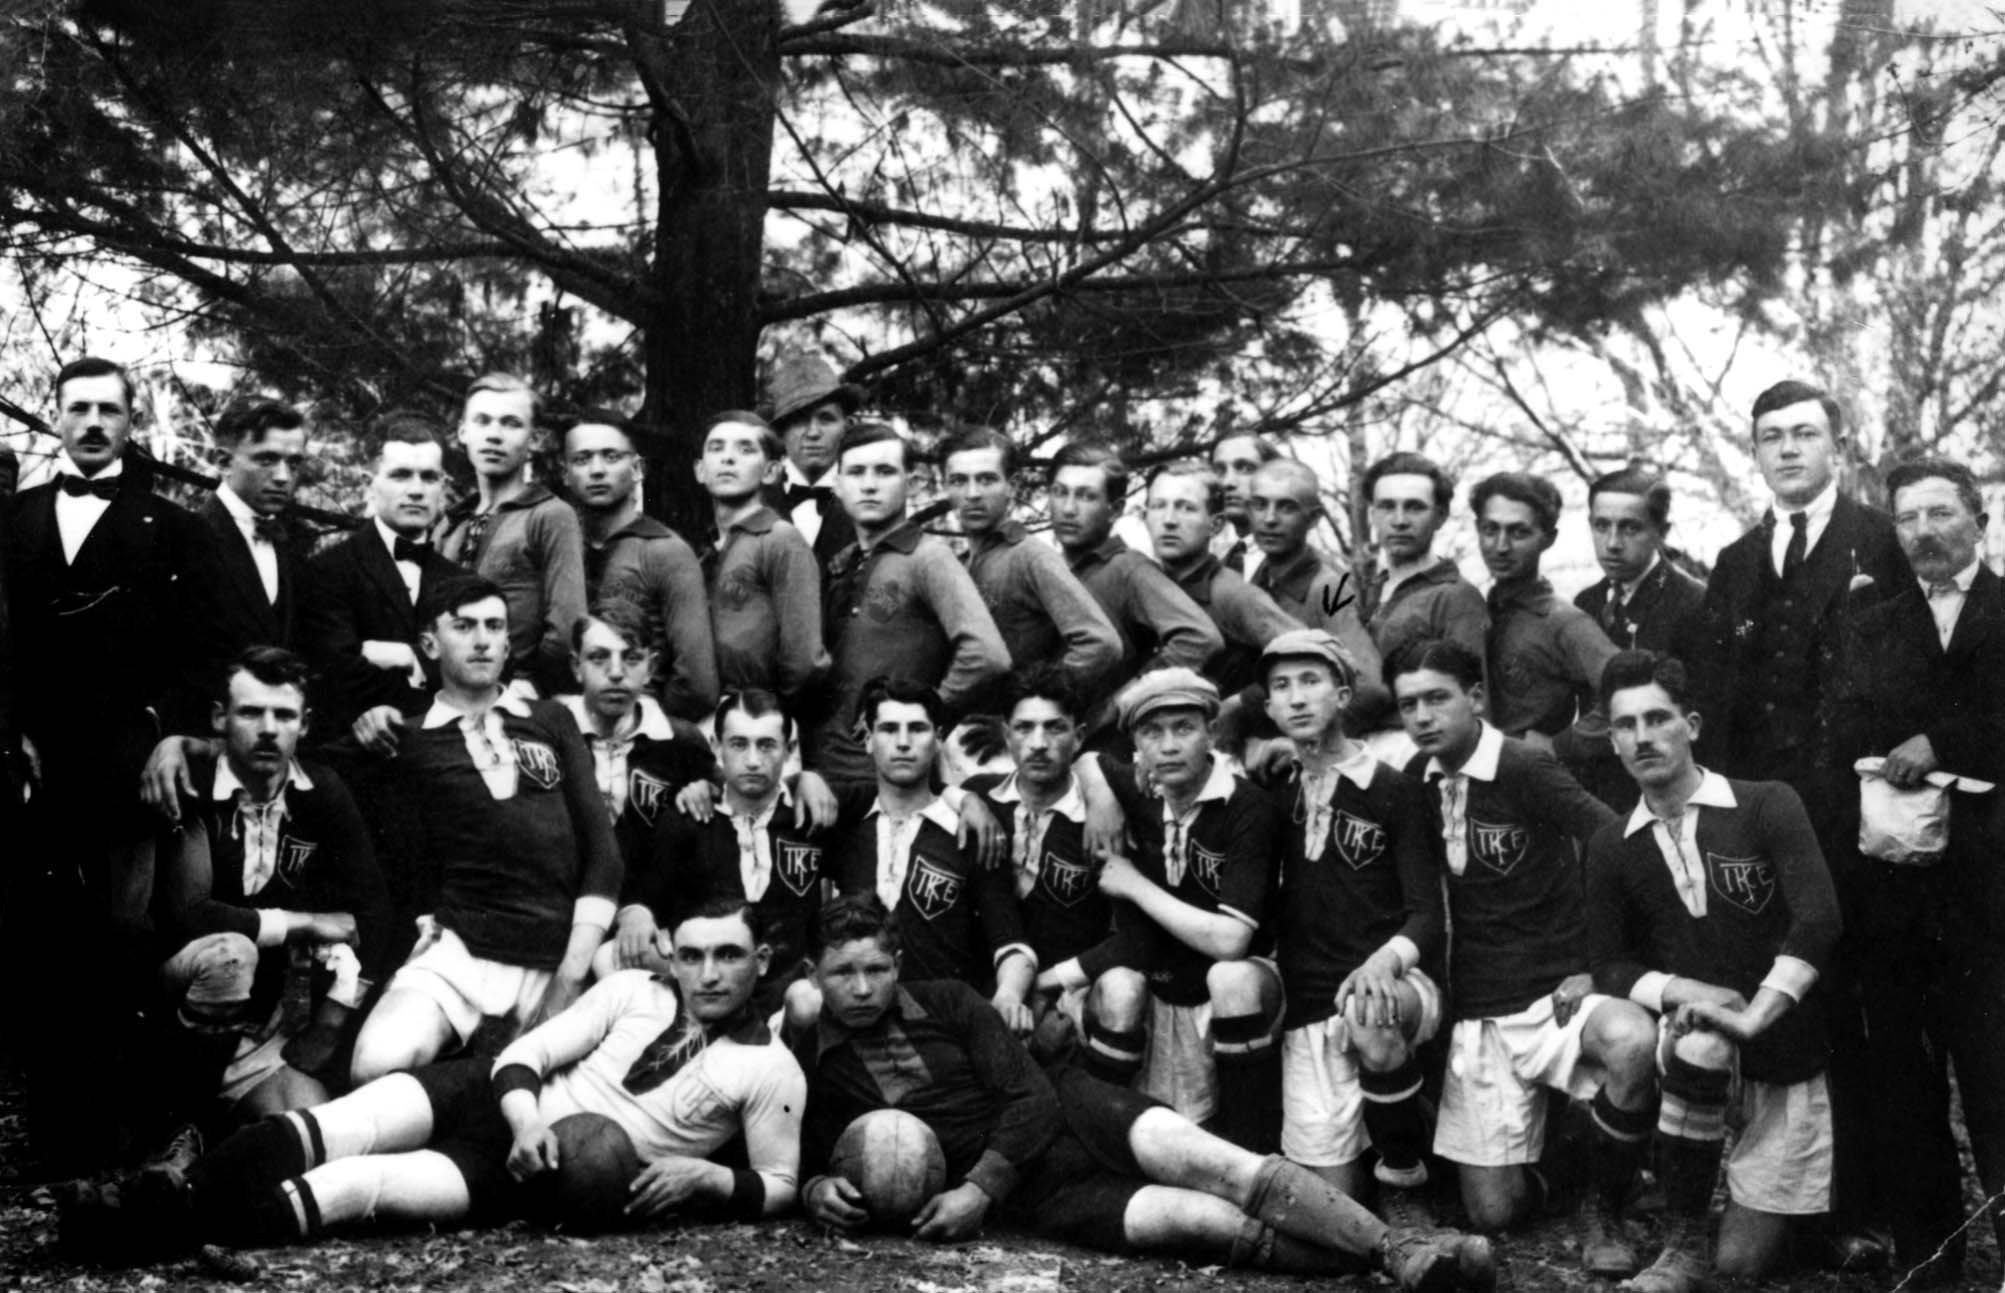 הונגריה, לפני המלחמה, קבוצת כדורגל לאחר זכייה בתחרות